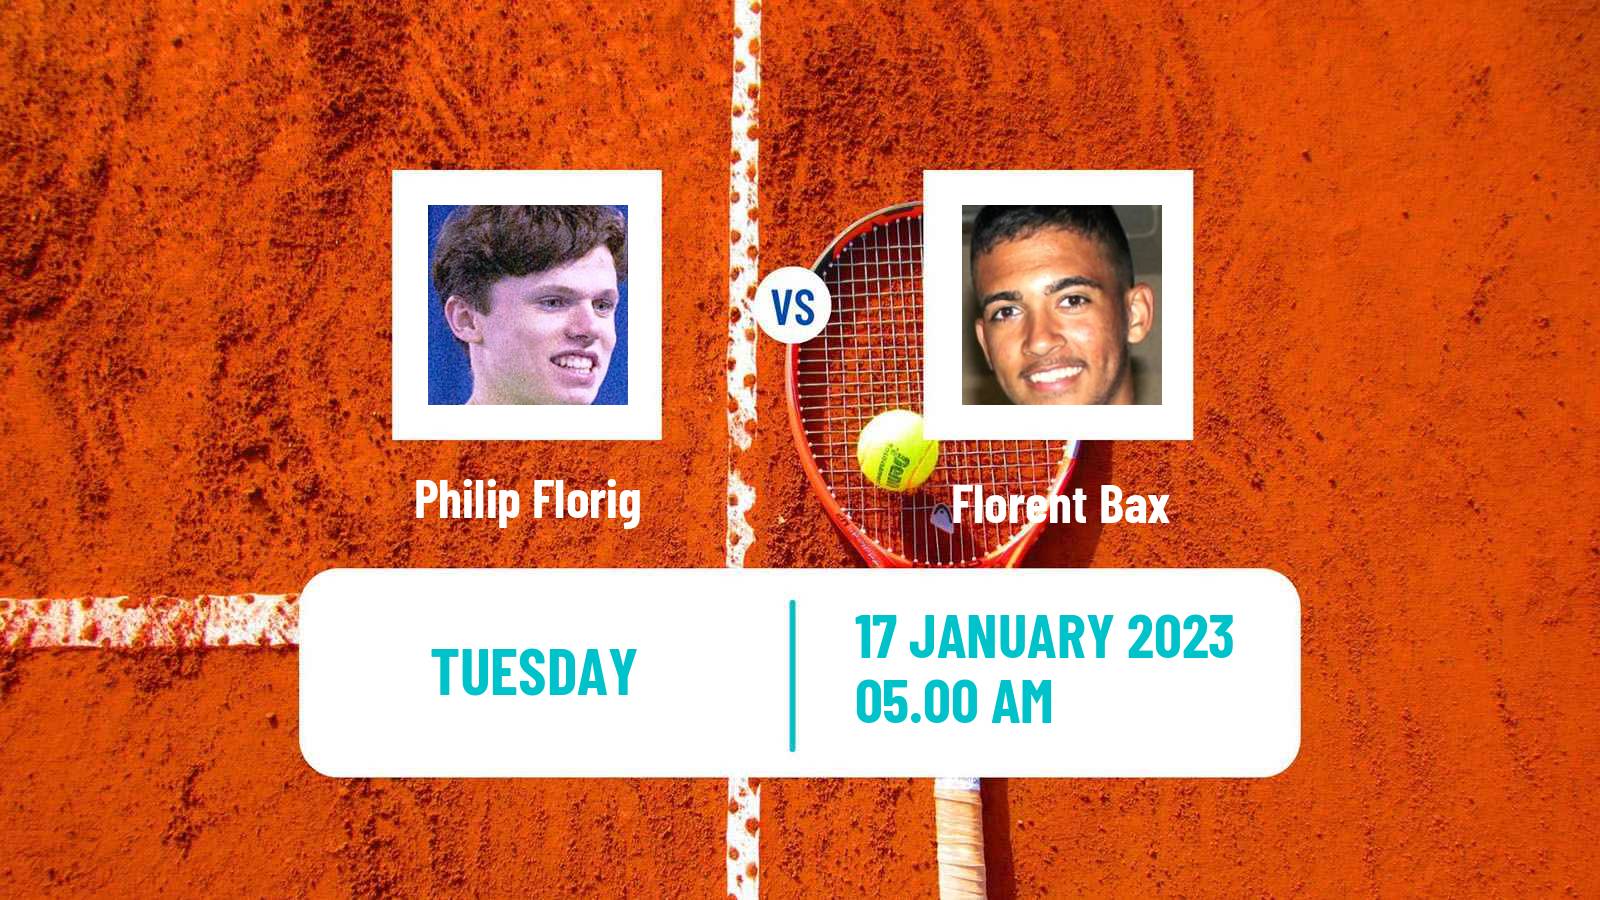 Tennis ITF Tournaments Philip Florig - Florent Bax